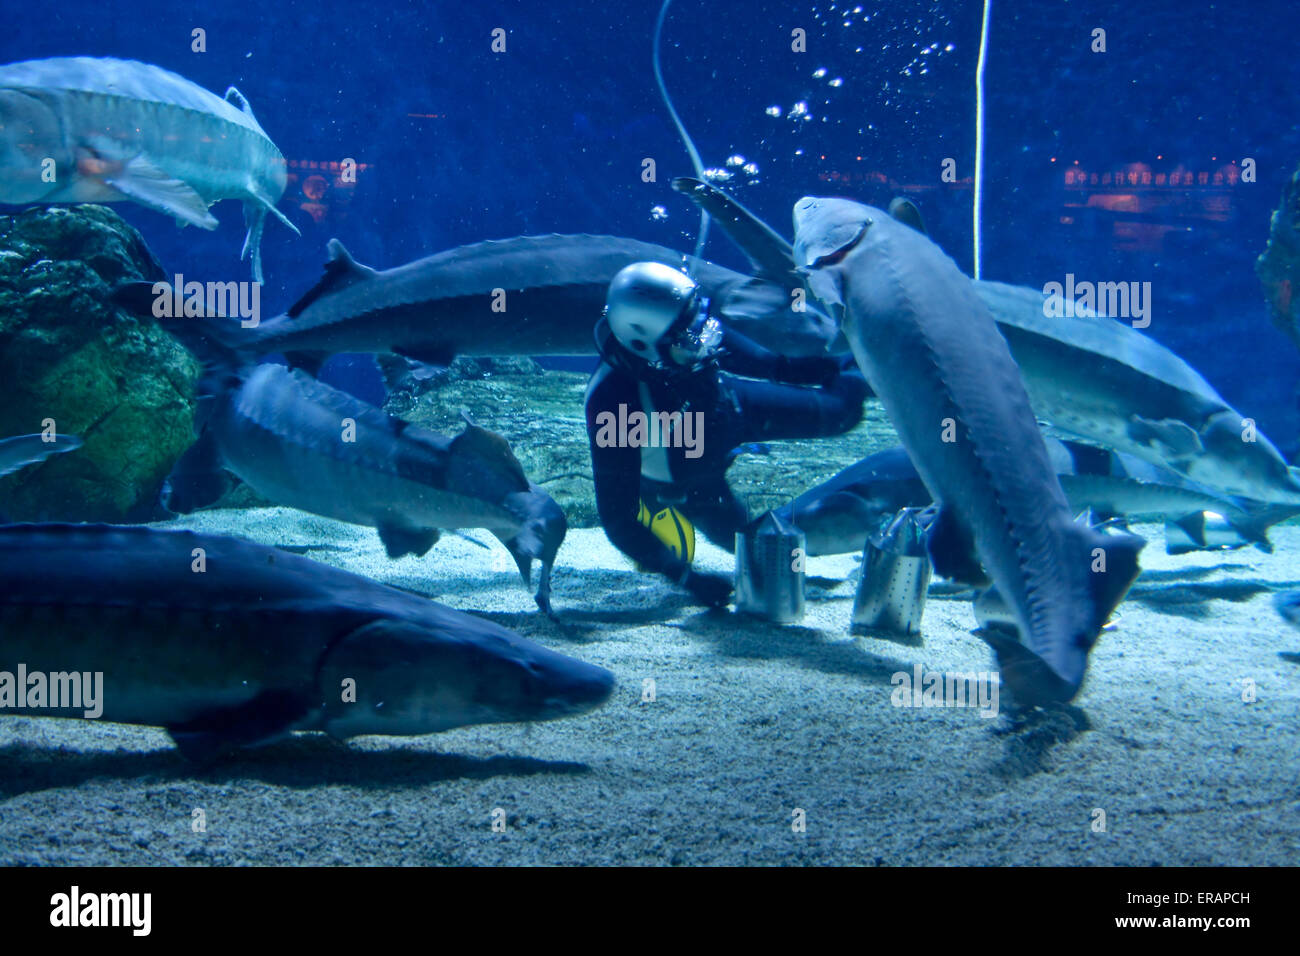 Feeding the giant sturgeon fish diver. Stock Photo